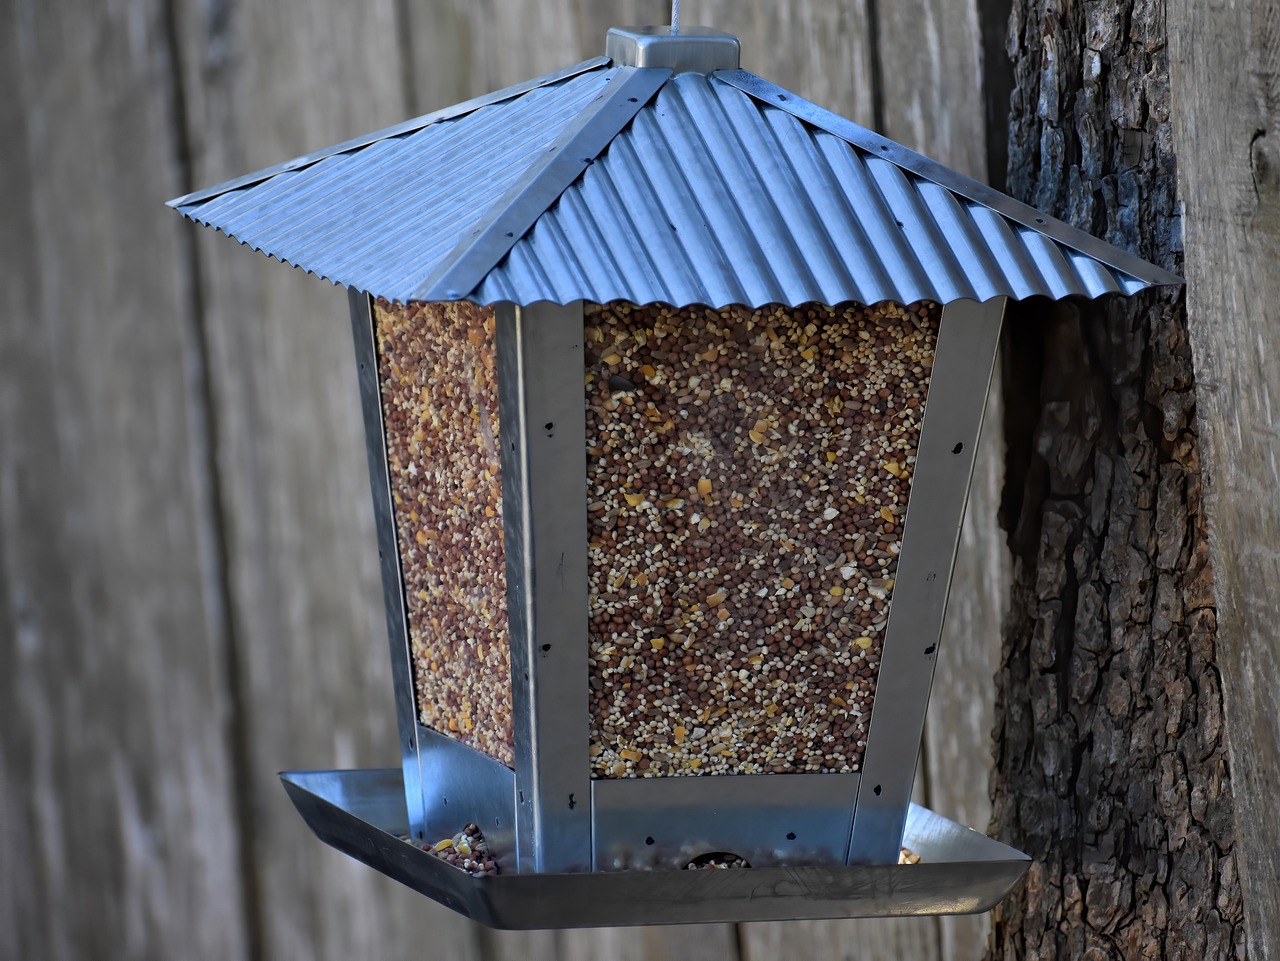 Tani karmnik dla ptaków – jakie wybrać, aby przyciągnąć piękne ptaki do ogrodu?